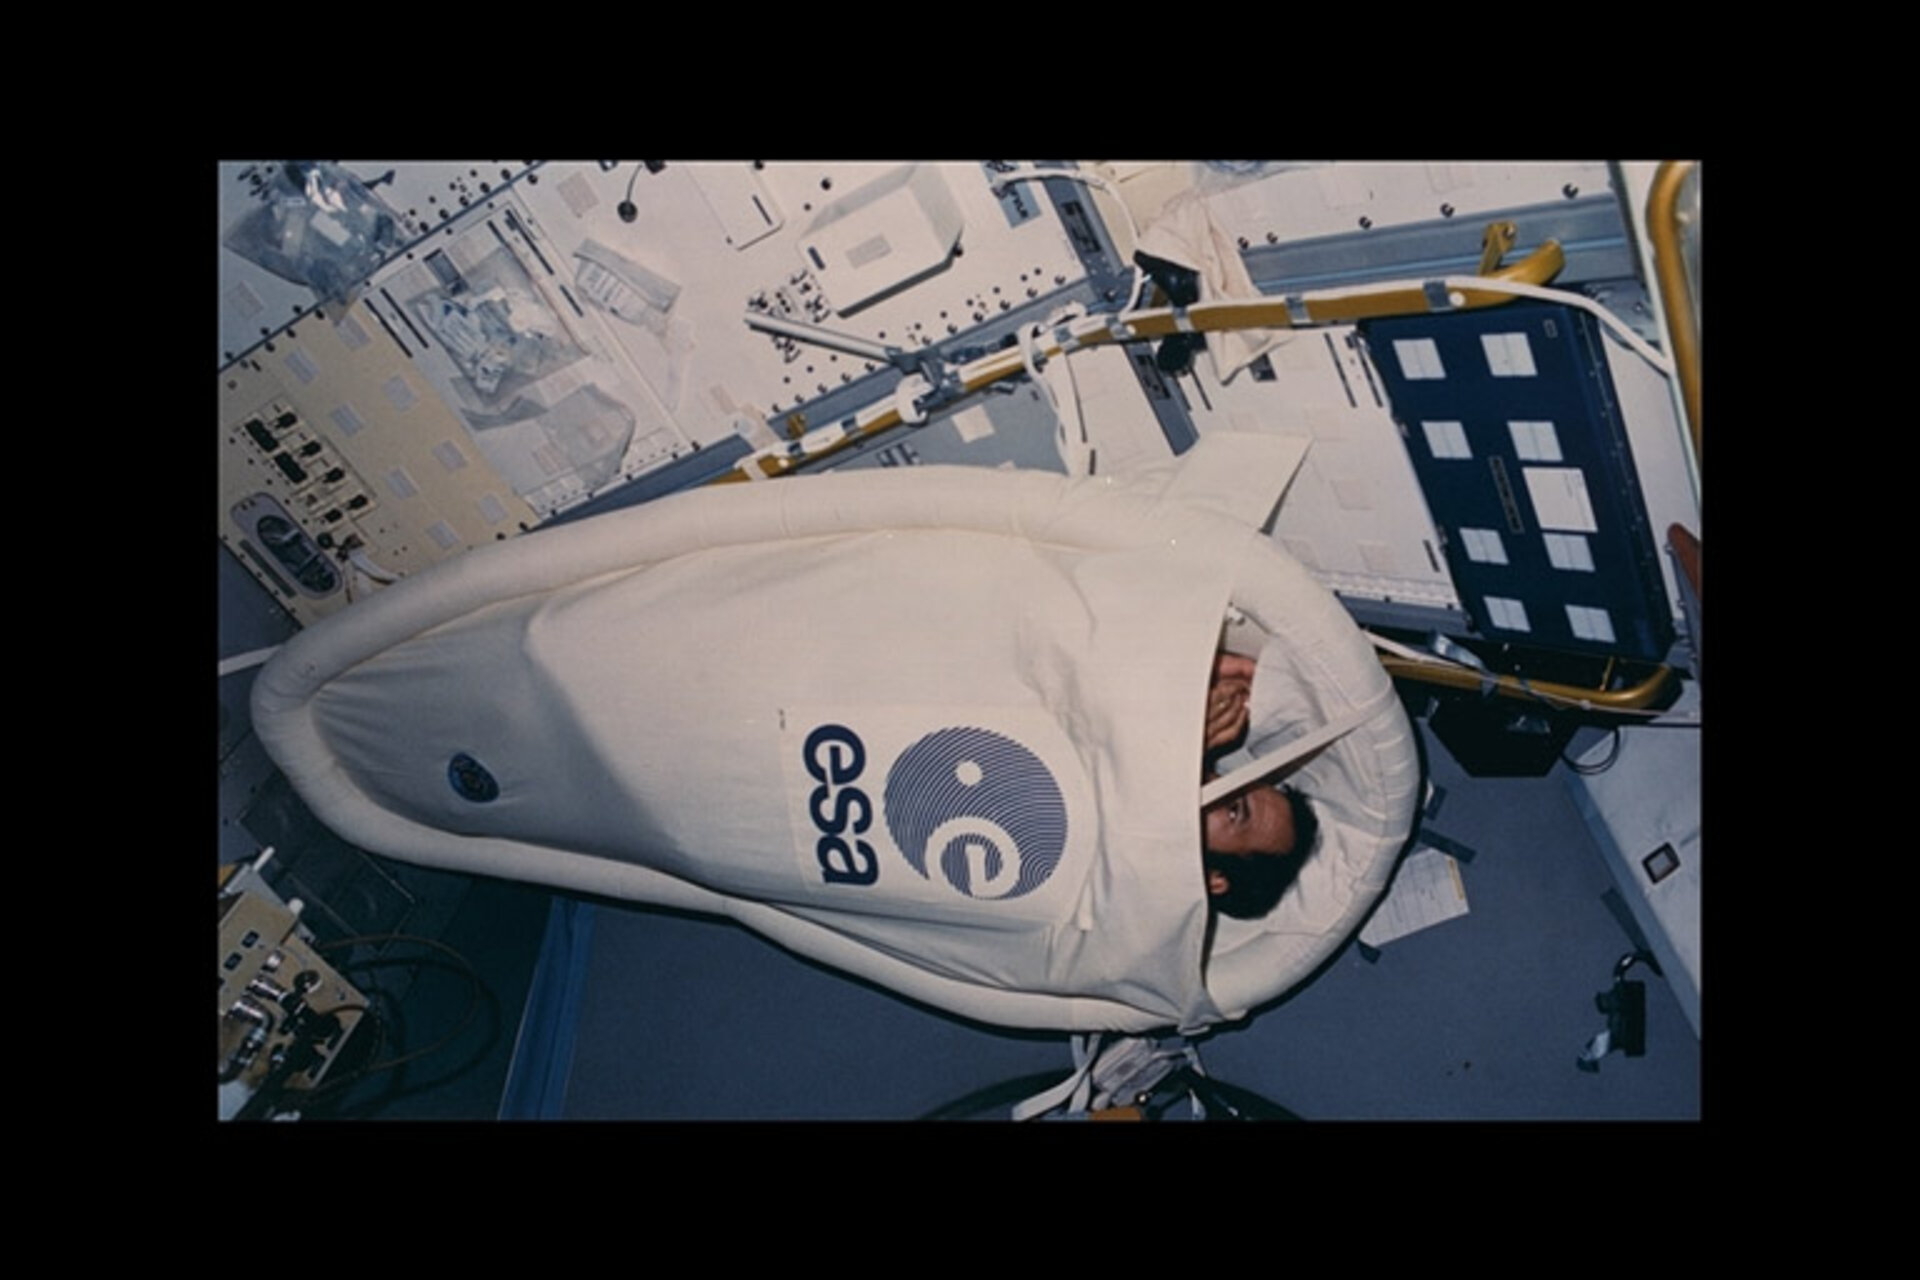 Ockels' Spacelab sleep restraint